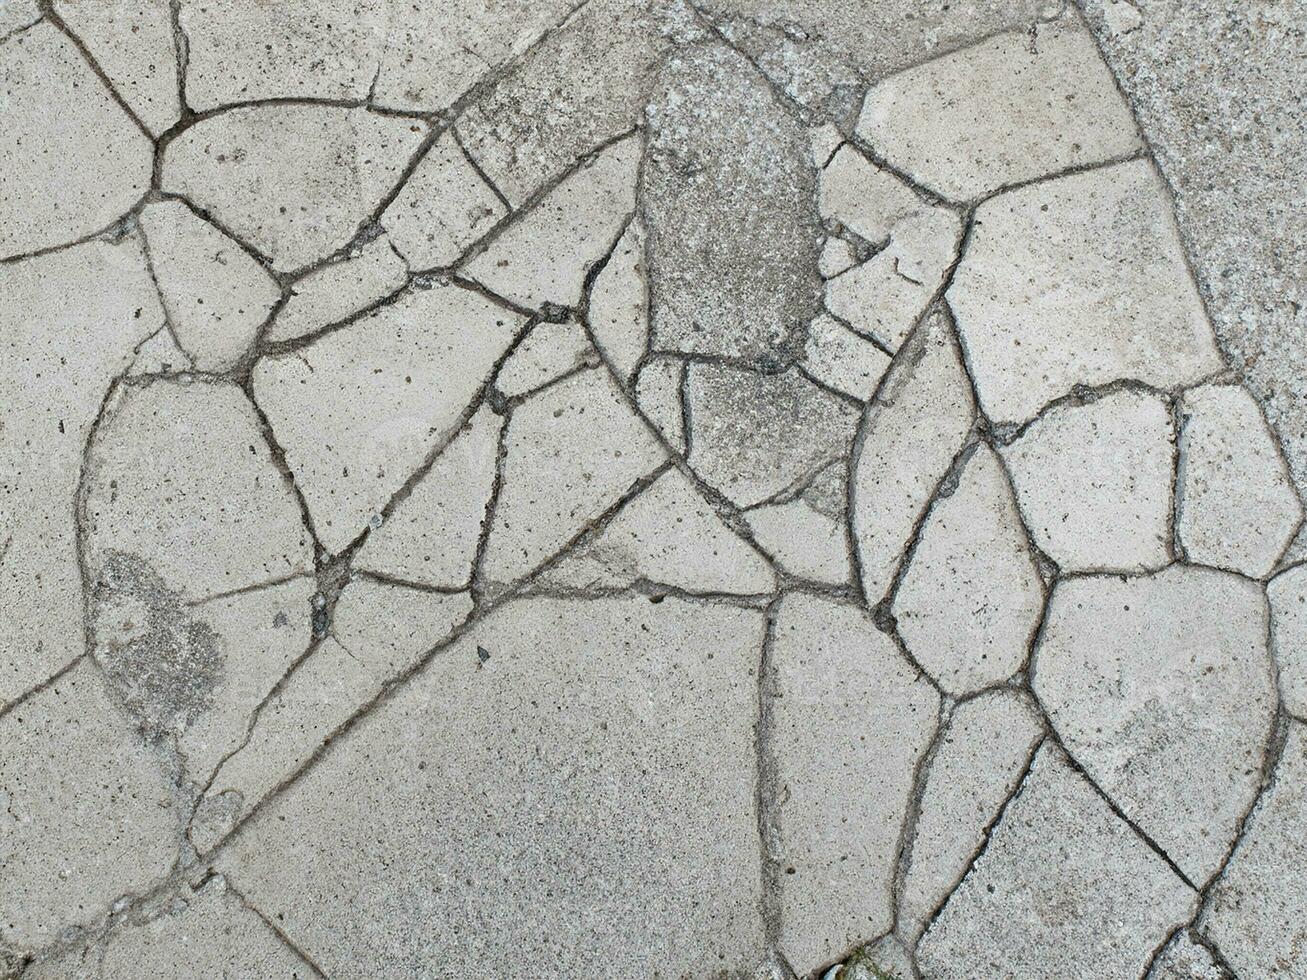 stänga upp spricka cement golv textur foto